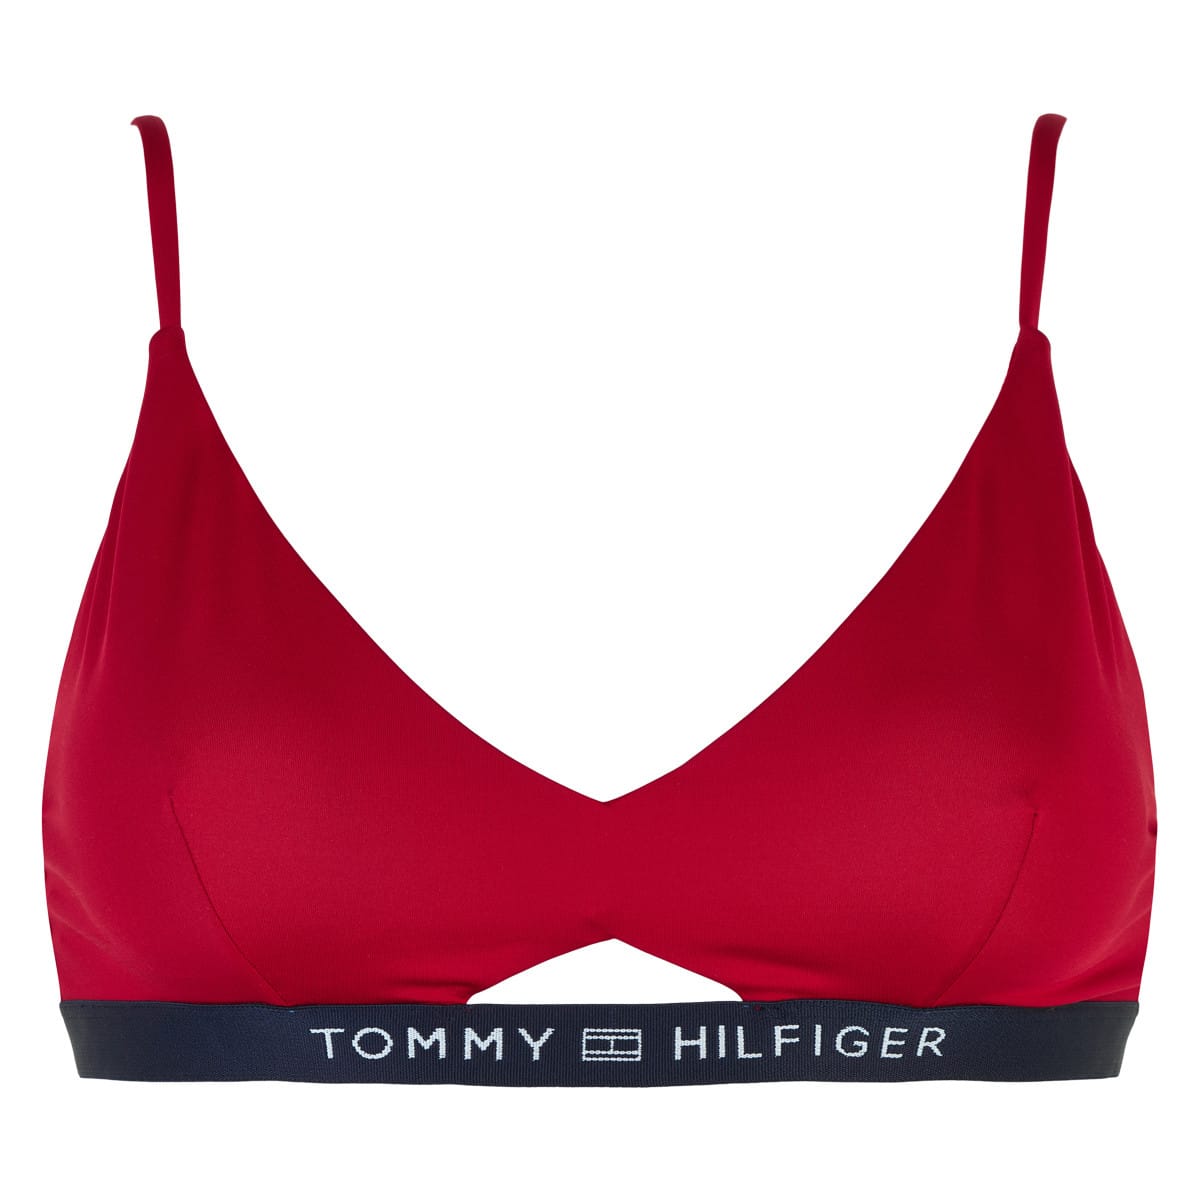 Lingeri Bikini Top, Farve: Rød, Størrelse: Dame - Lingeri Top